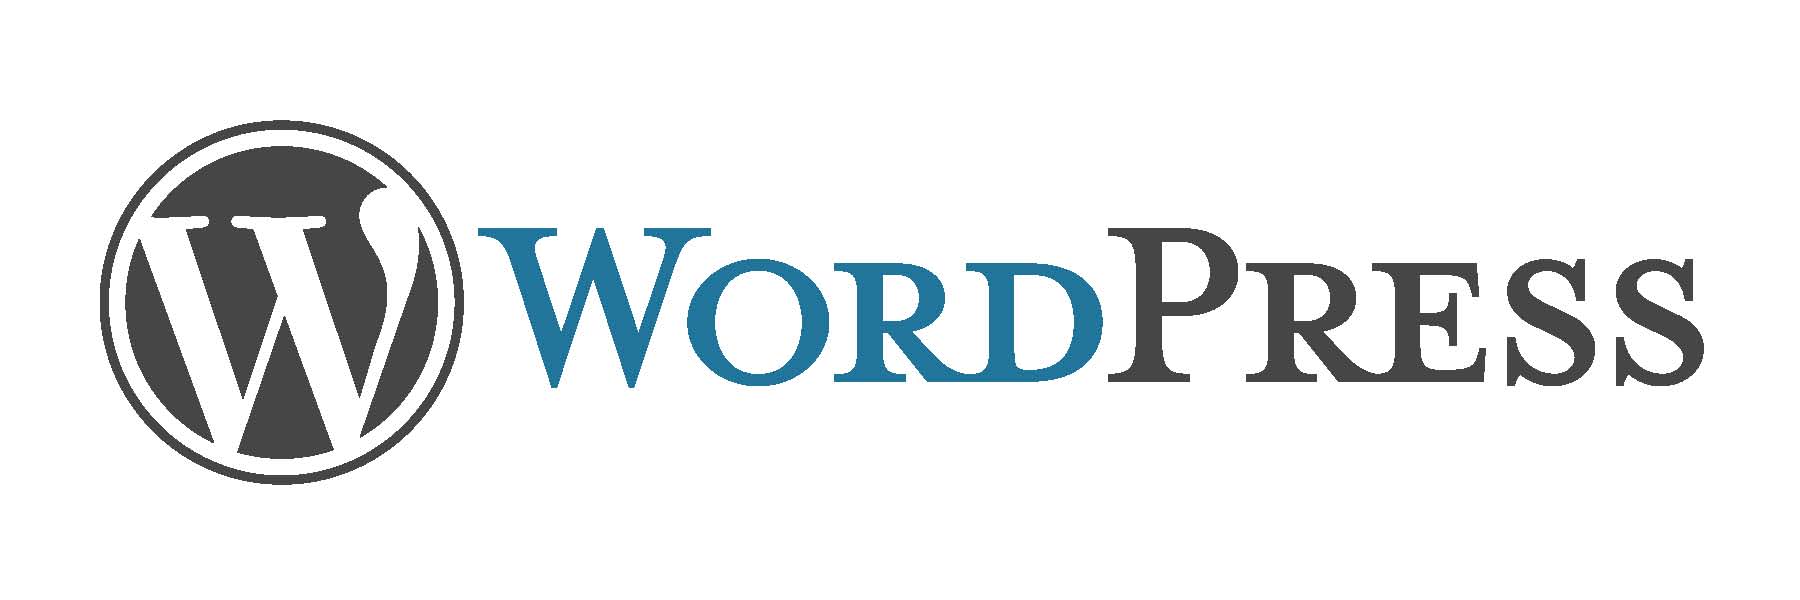 WordPress — лучшая система управления контентом